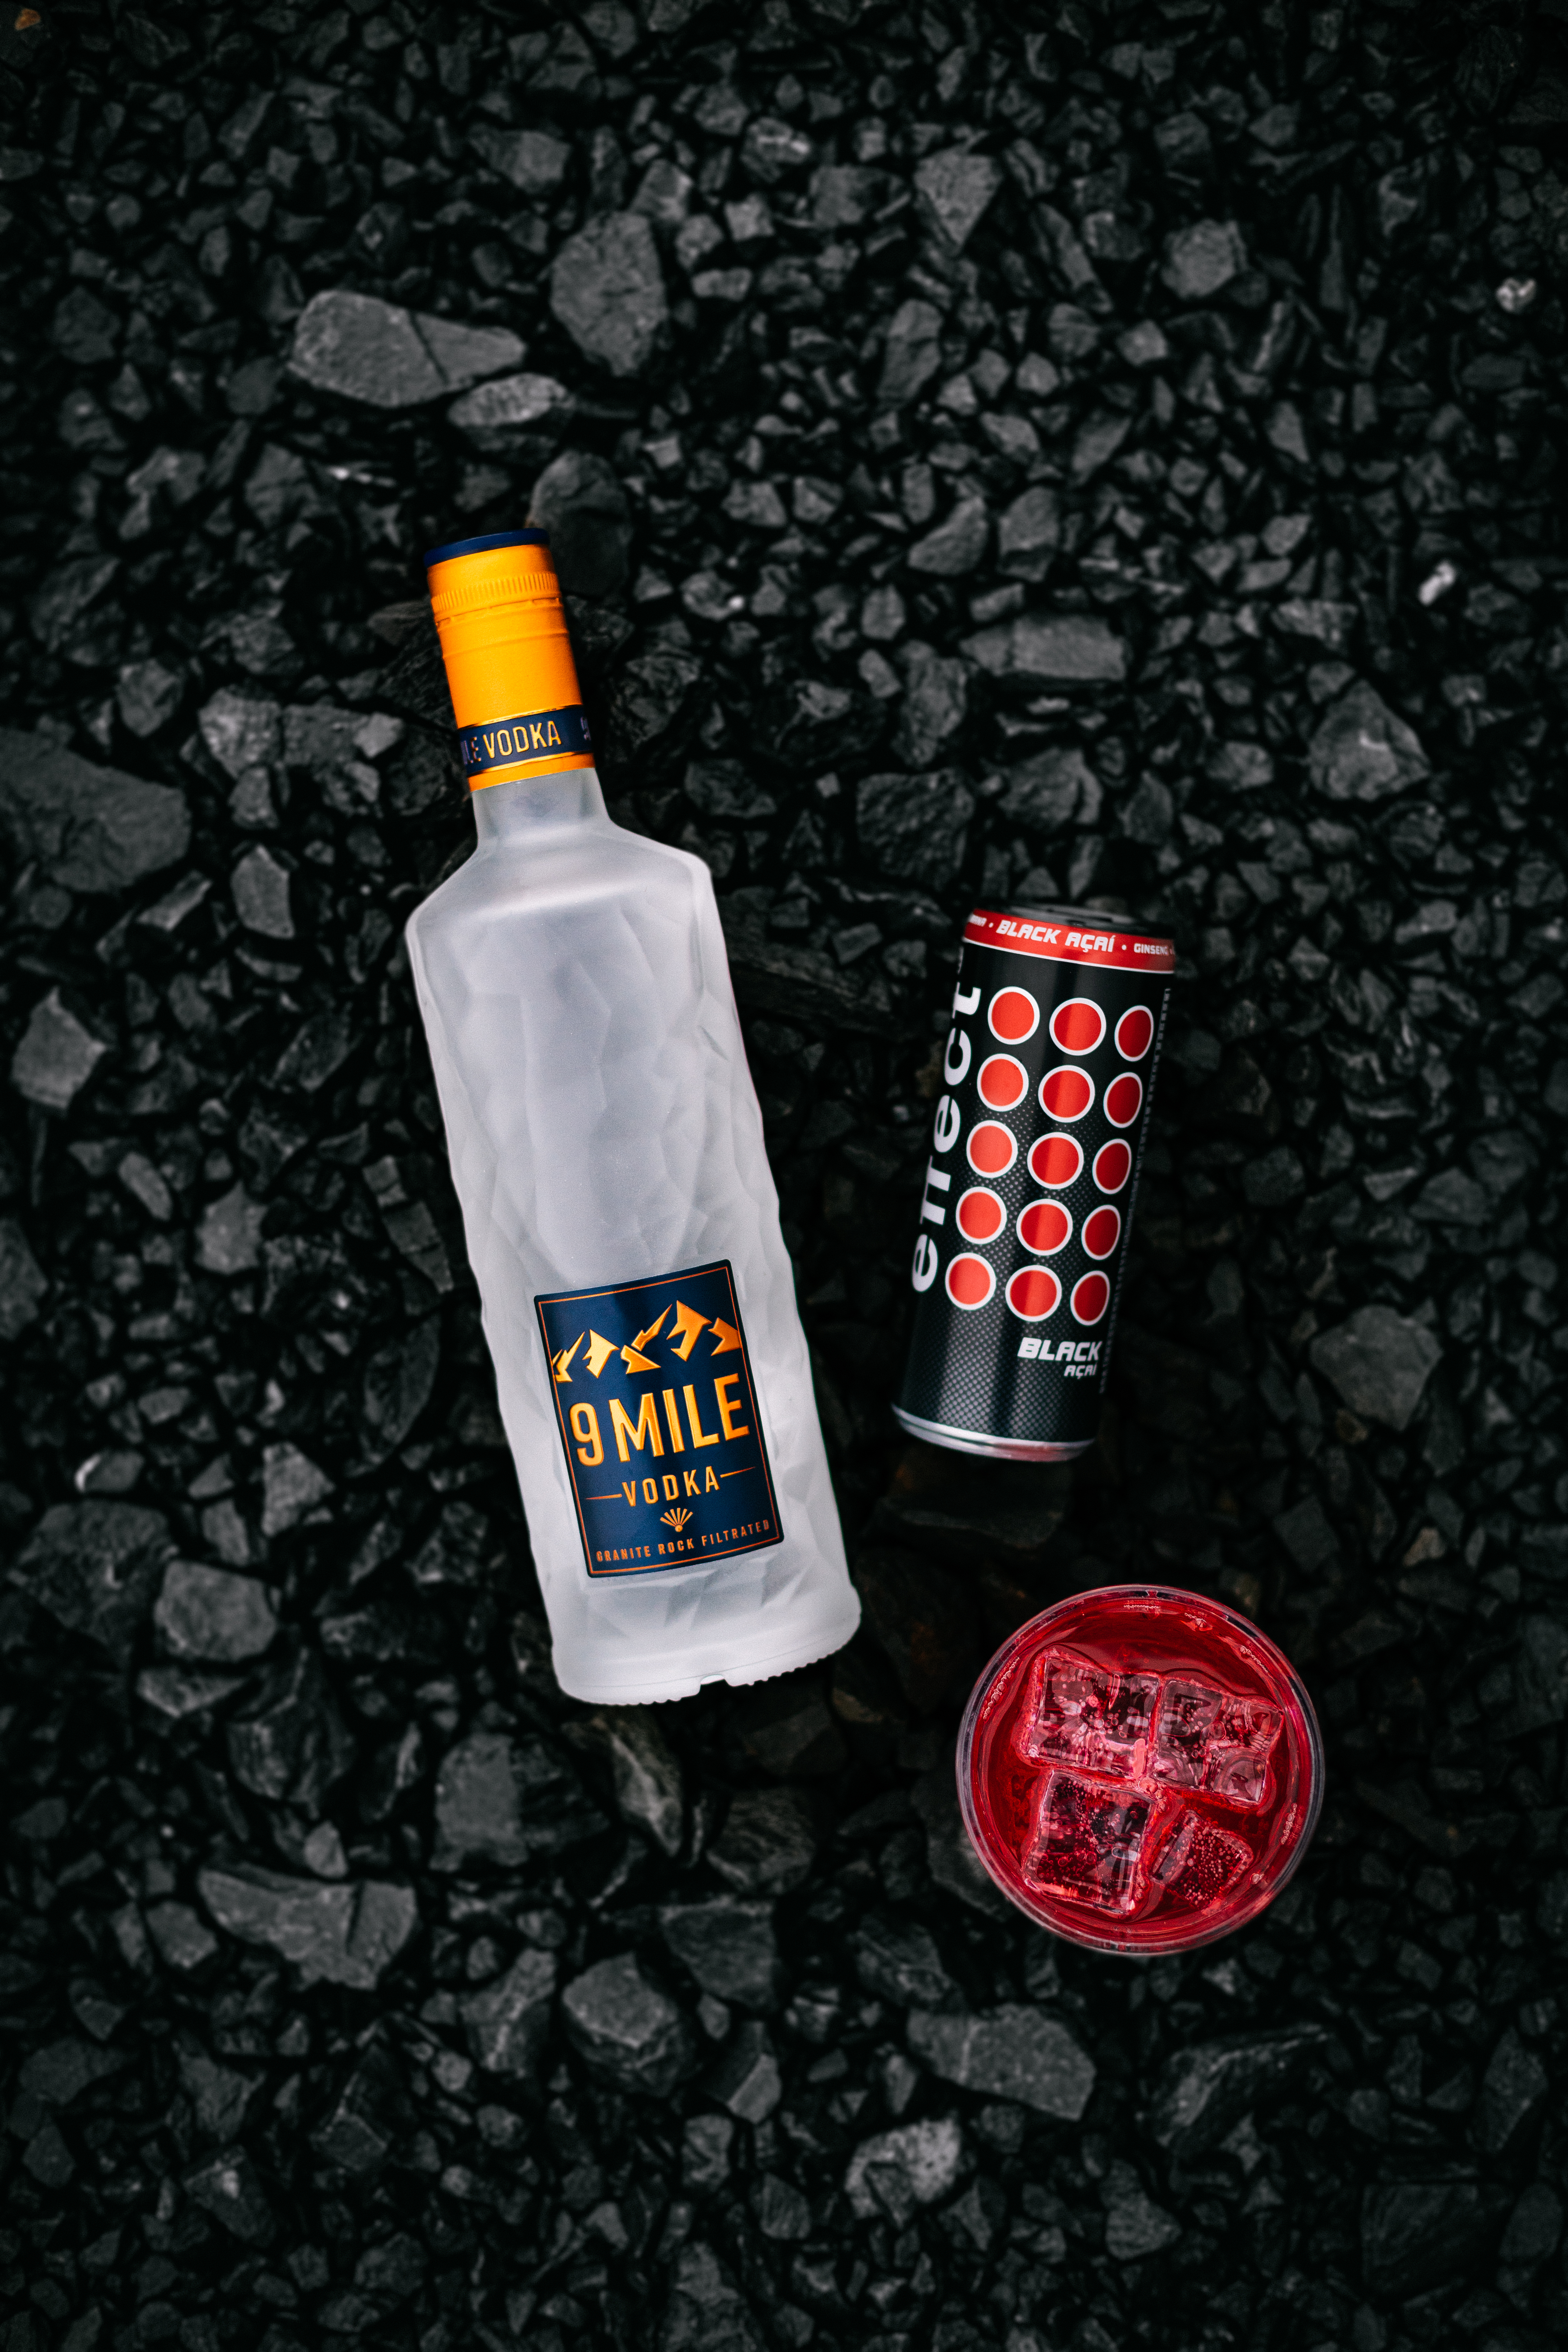 9 Mile Vodka - Ruby Rock ANGEBOT - 6Fl 9 Mile 0,7L (37,5% Vol) kaufen und 48x effect black acai 0,25L GRATIS erhalten inkl. Pfand EINWEG- [Enthält Sulfite]